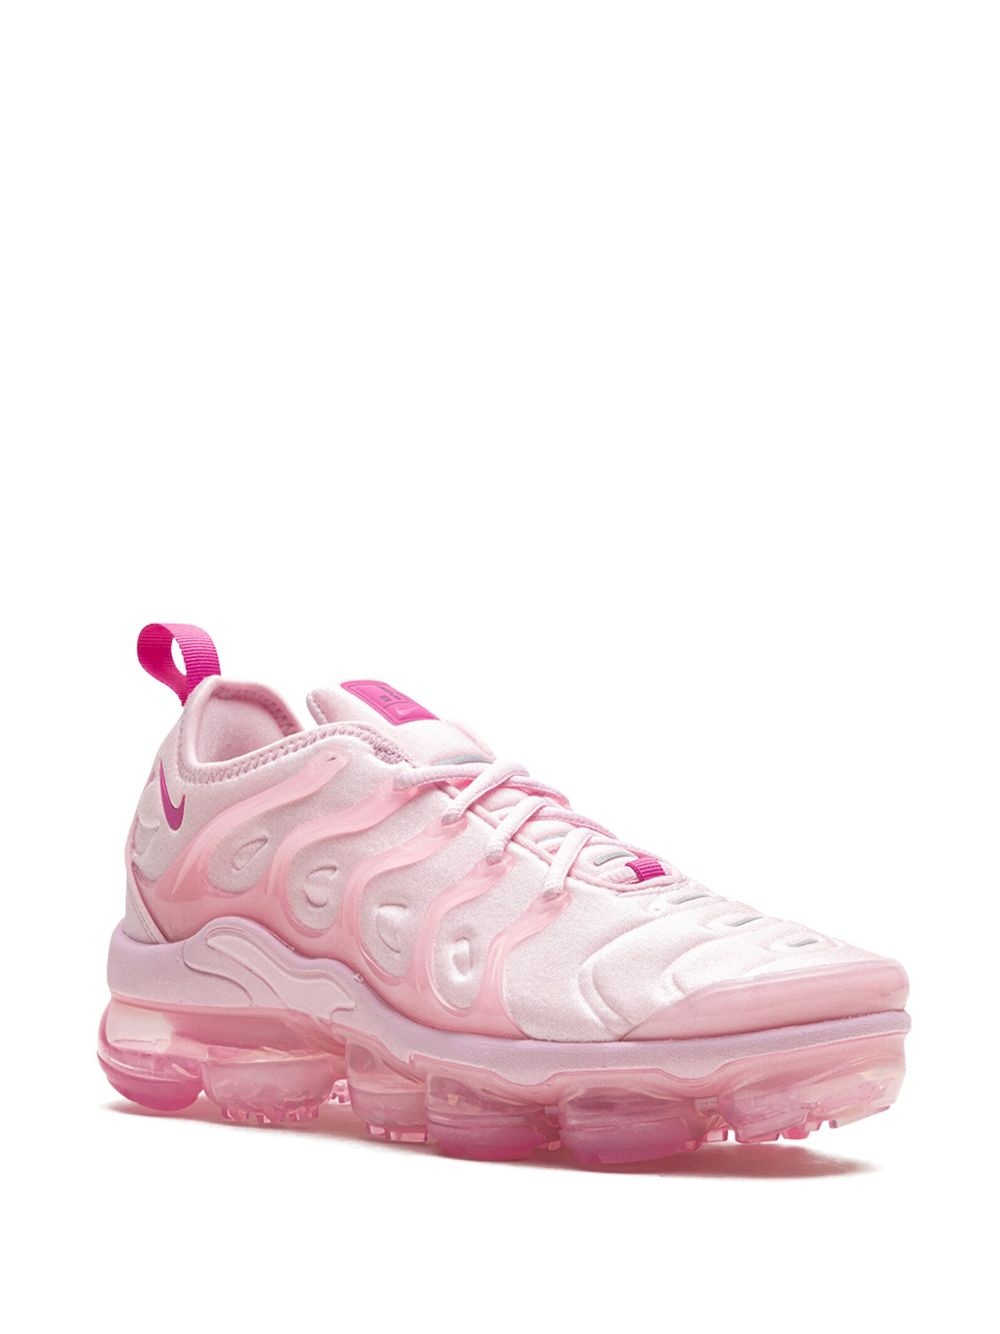 Air Vapormax Plus "Pink Foam" sneakers - 2